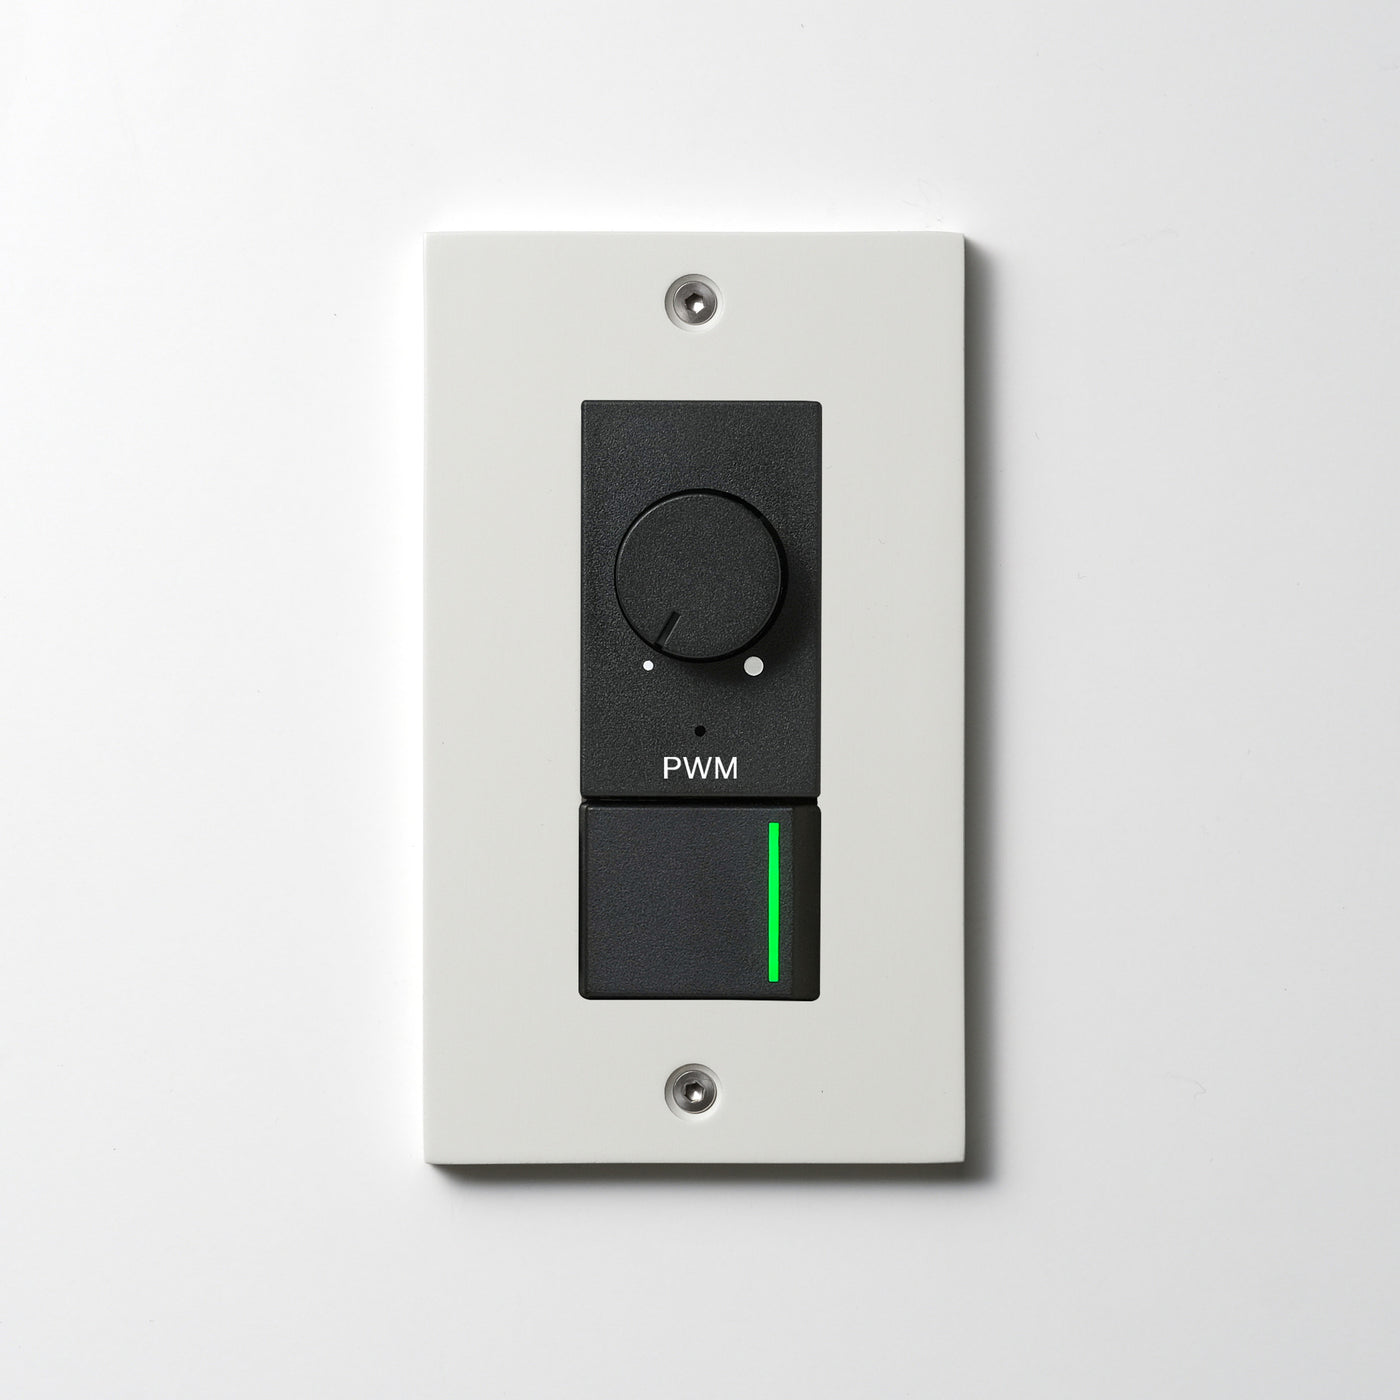 アルミダイキャスト（ホワイト）プレート  <br>+ NK PWM制御方式(1ch)ライトコントロール＋片切、3路ガイドランプ（グリーン）スイッチ　 ブラック